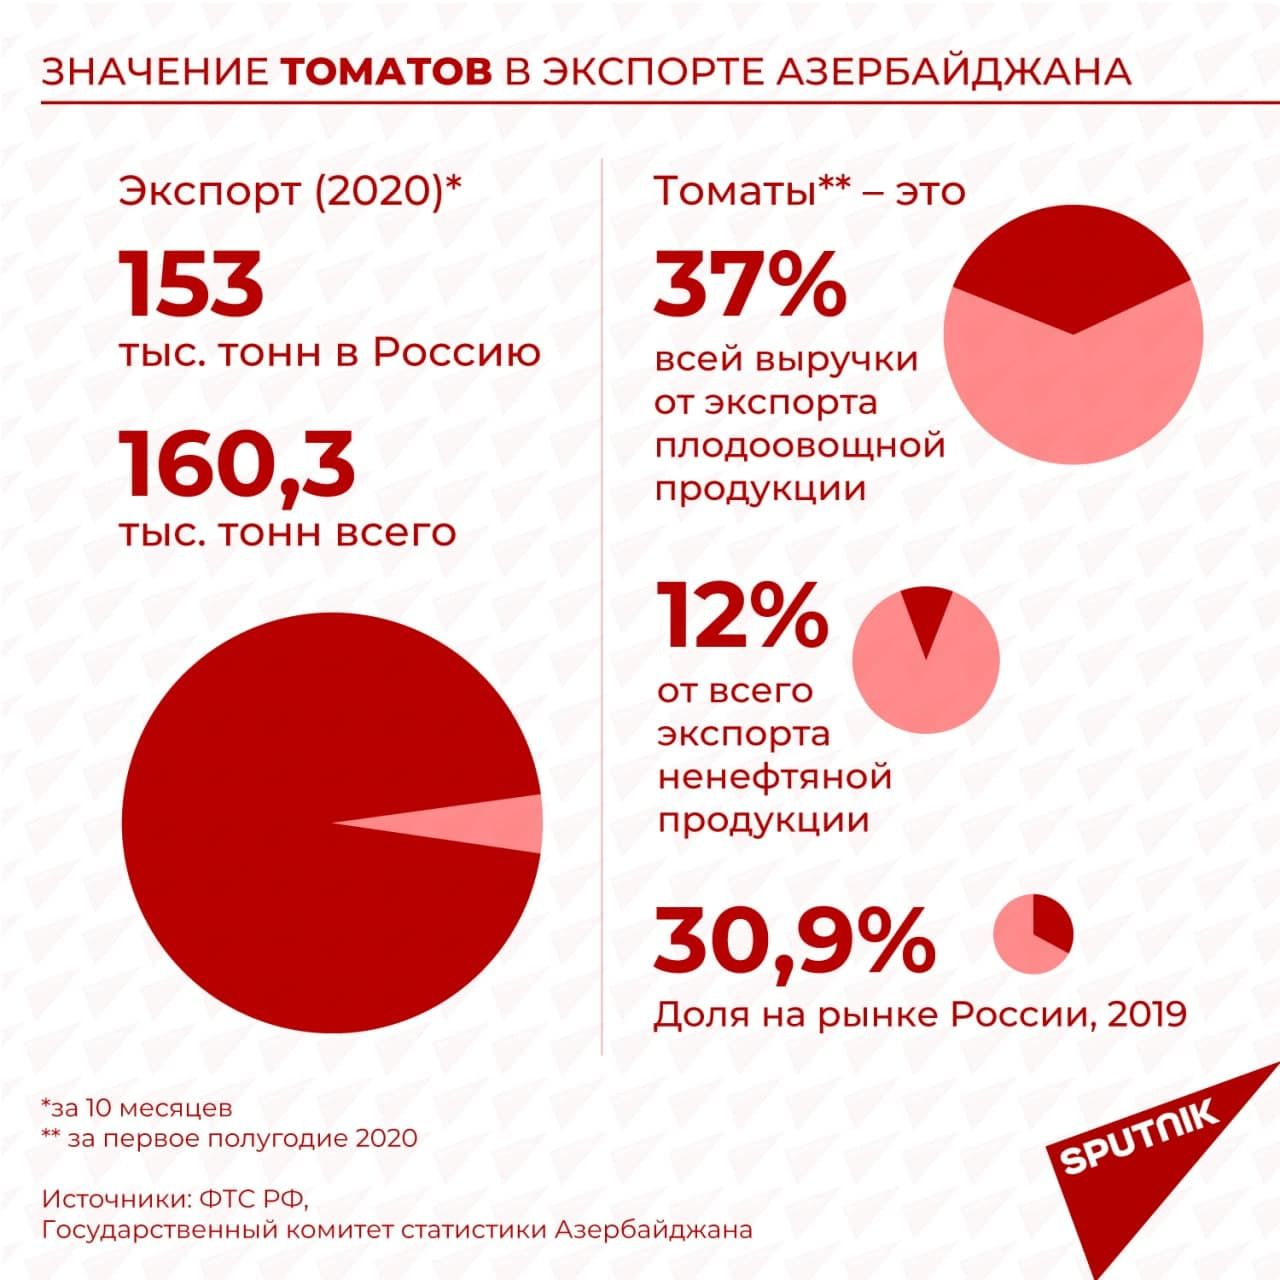 Инфографика: Значение томатов в экспорте Азербайджана - Sputnik Азербайджан